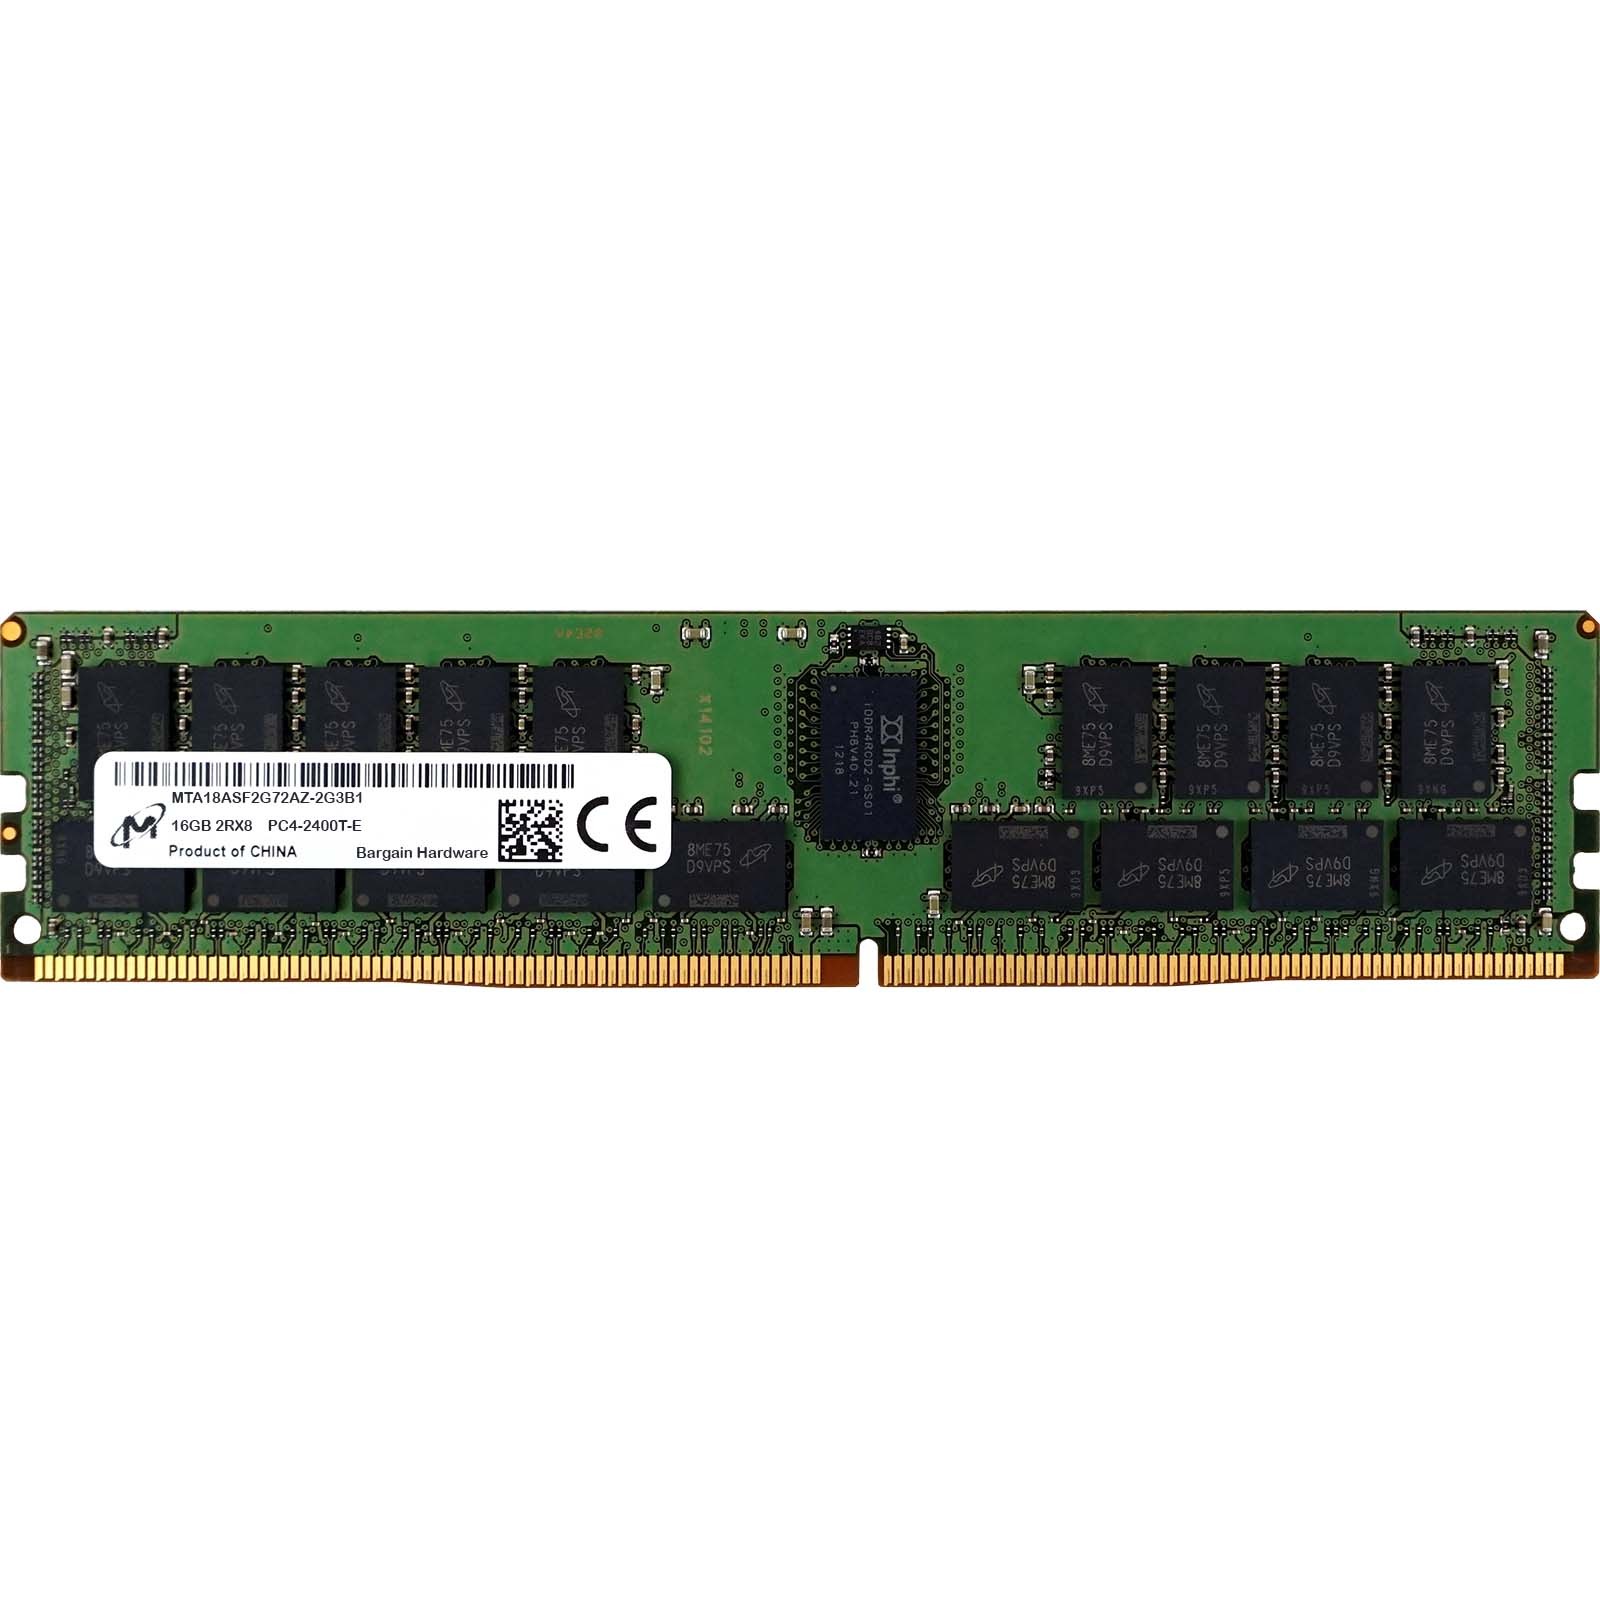 Micron (MTA18ASF2G72AZ-2G3B1) - 16GB PC4-19200T-E (2RX8, DDR4-2400MHz) RAM